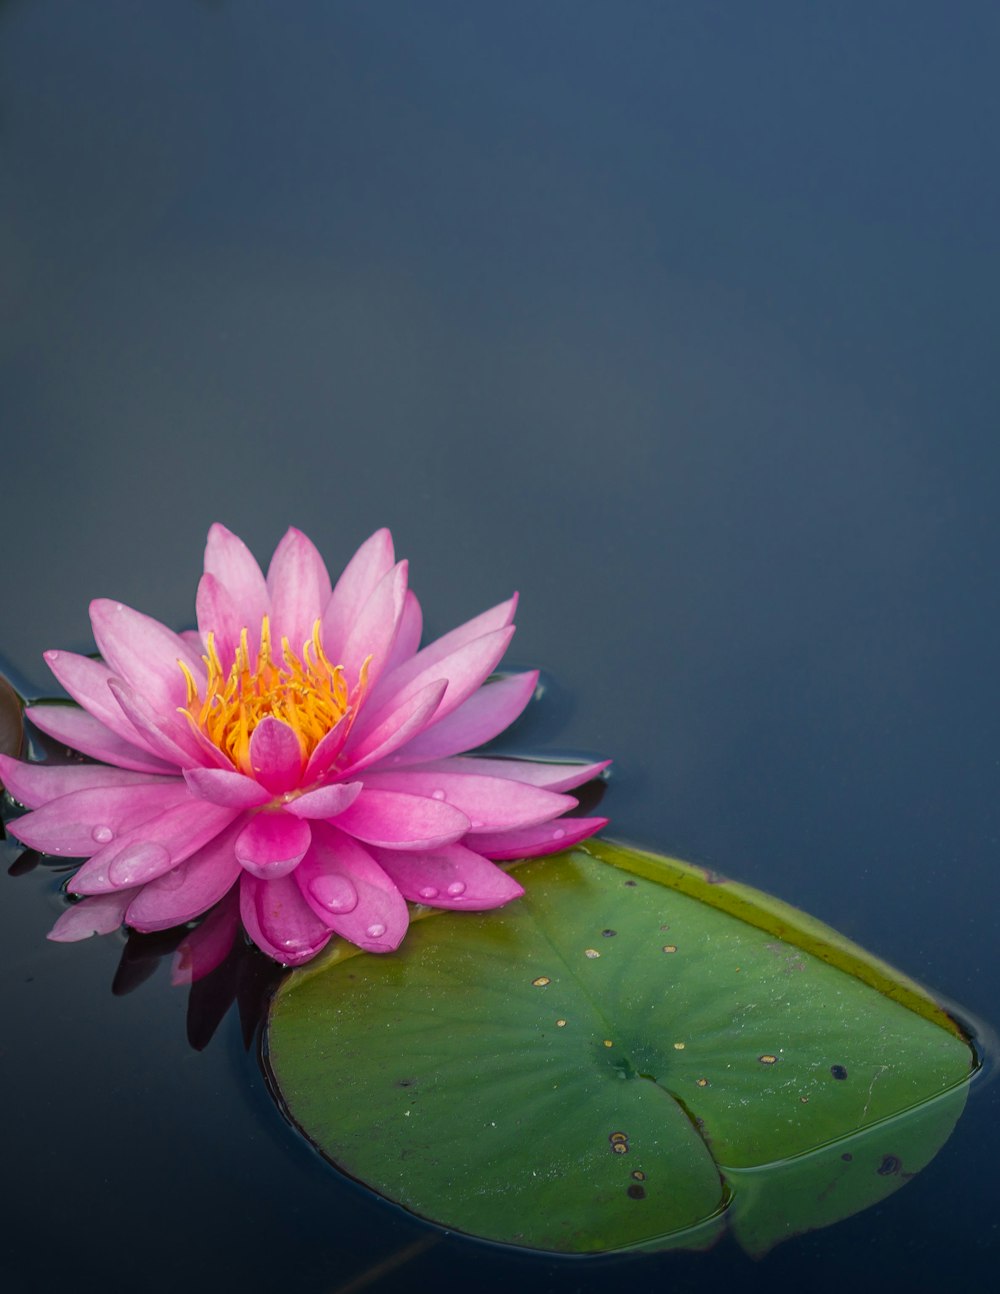 fiore di loto rosa sullo specchio d'acqua